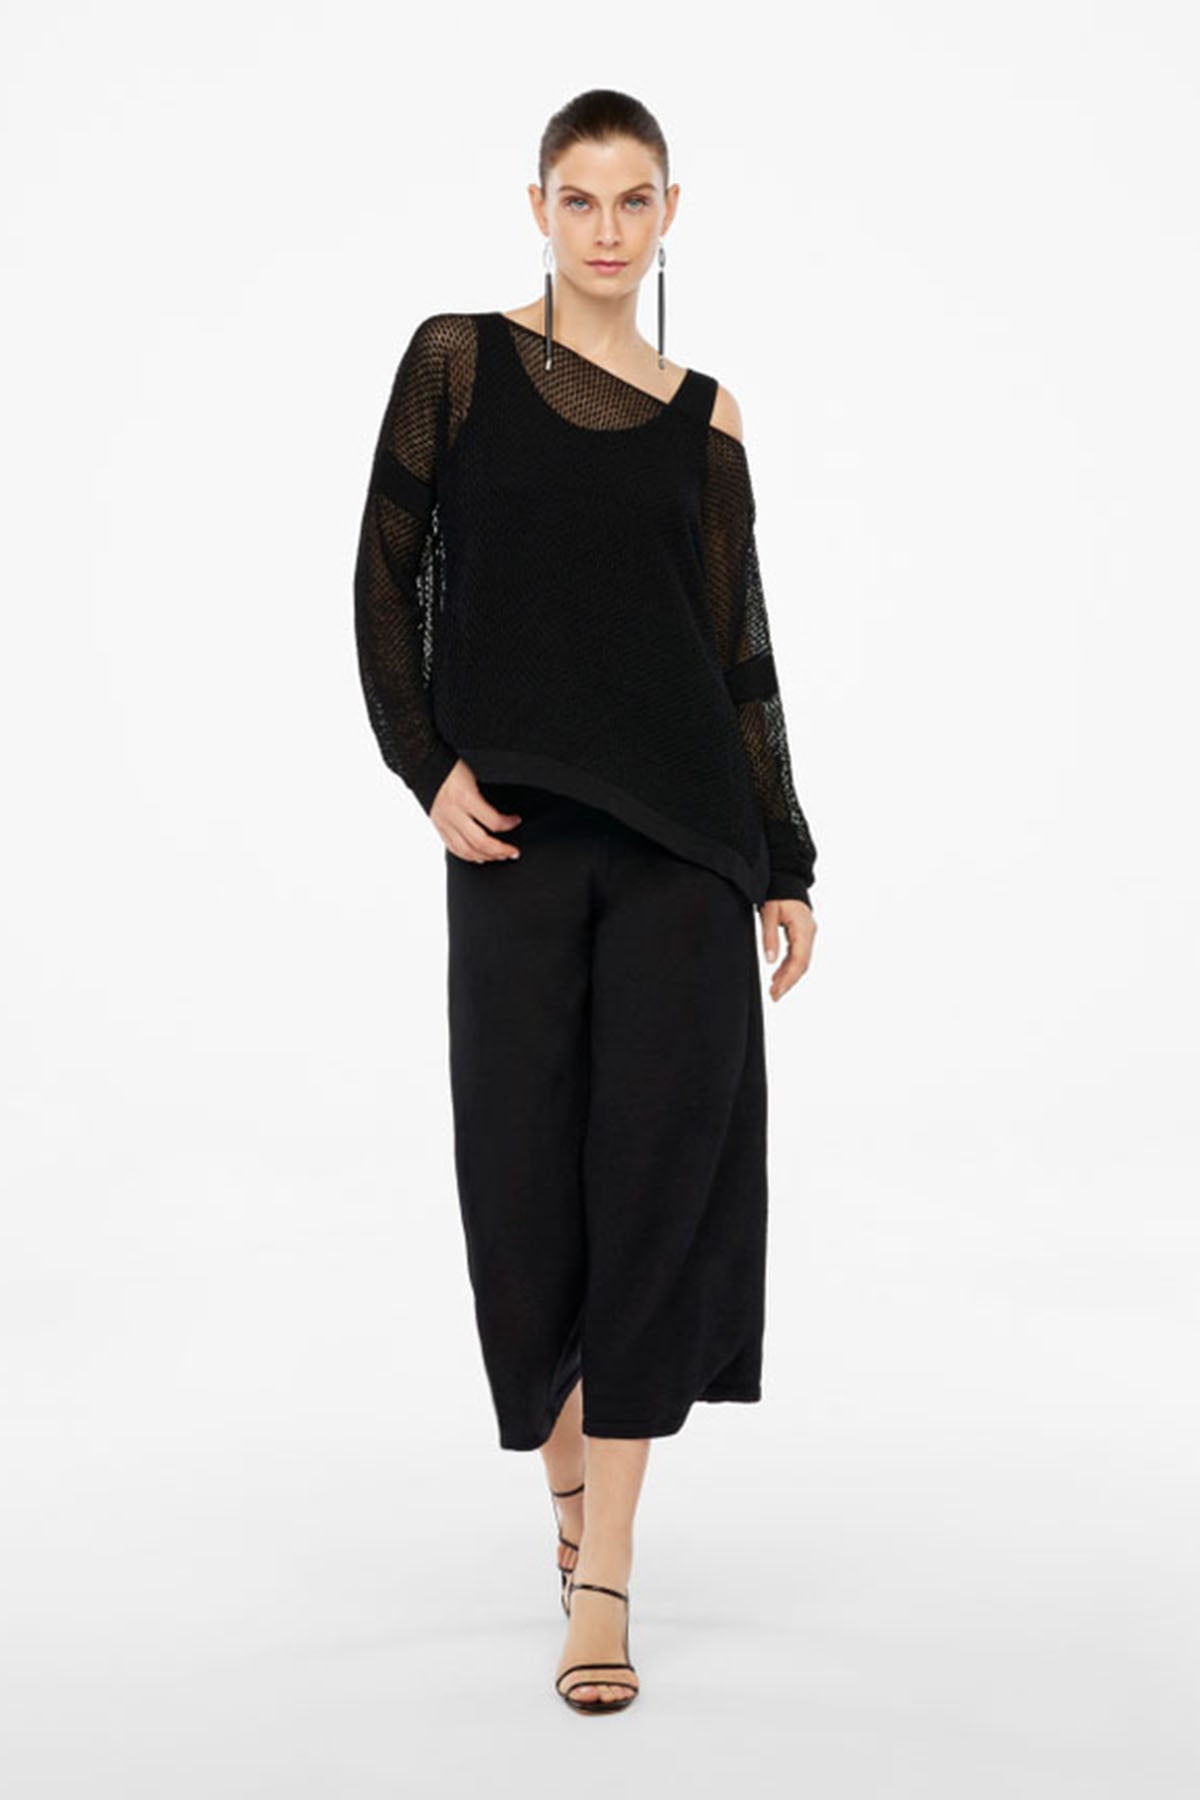 Sarah Pacini Geniş Kesim Kayık Yaka Örme Keten Triko-Libas Trendy Fashion Store